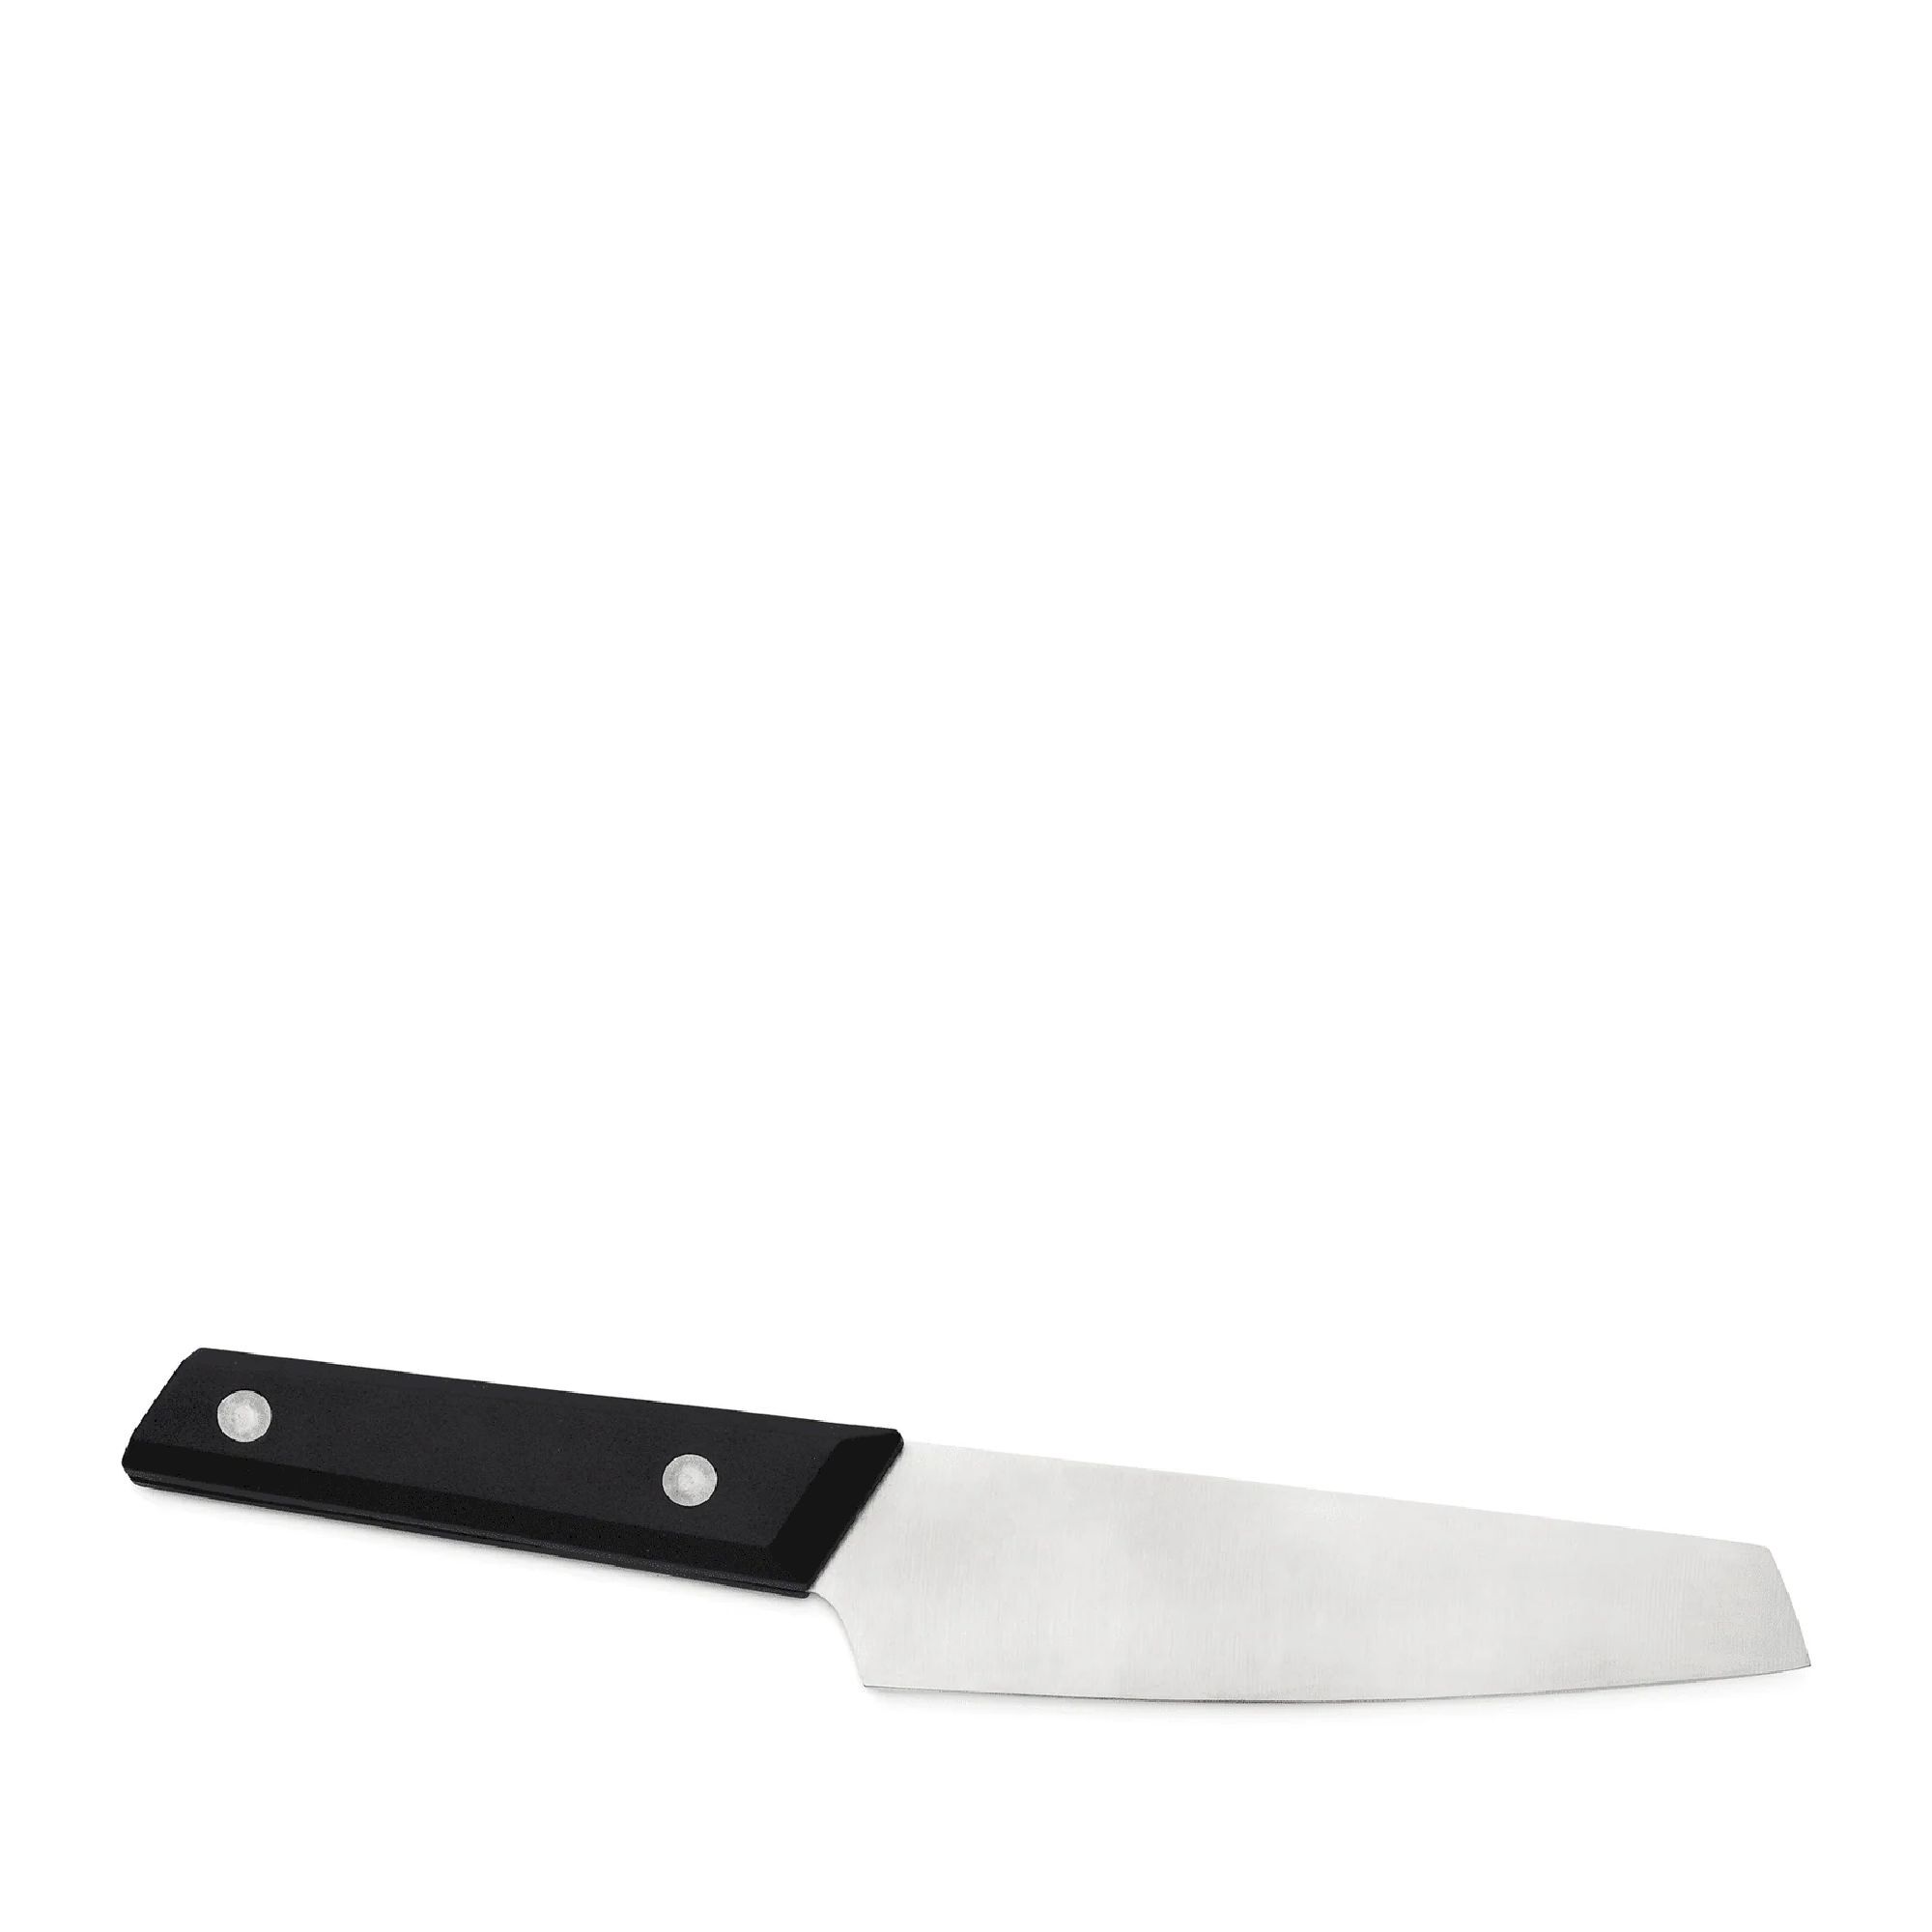 Primus FieldChef Knife - Messer | Hardloop